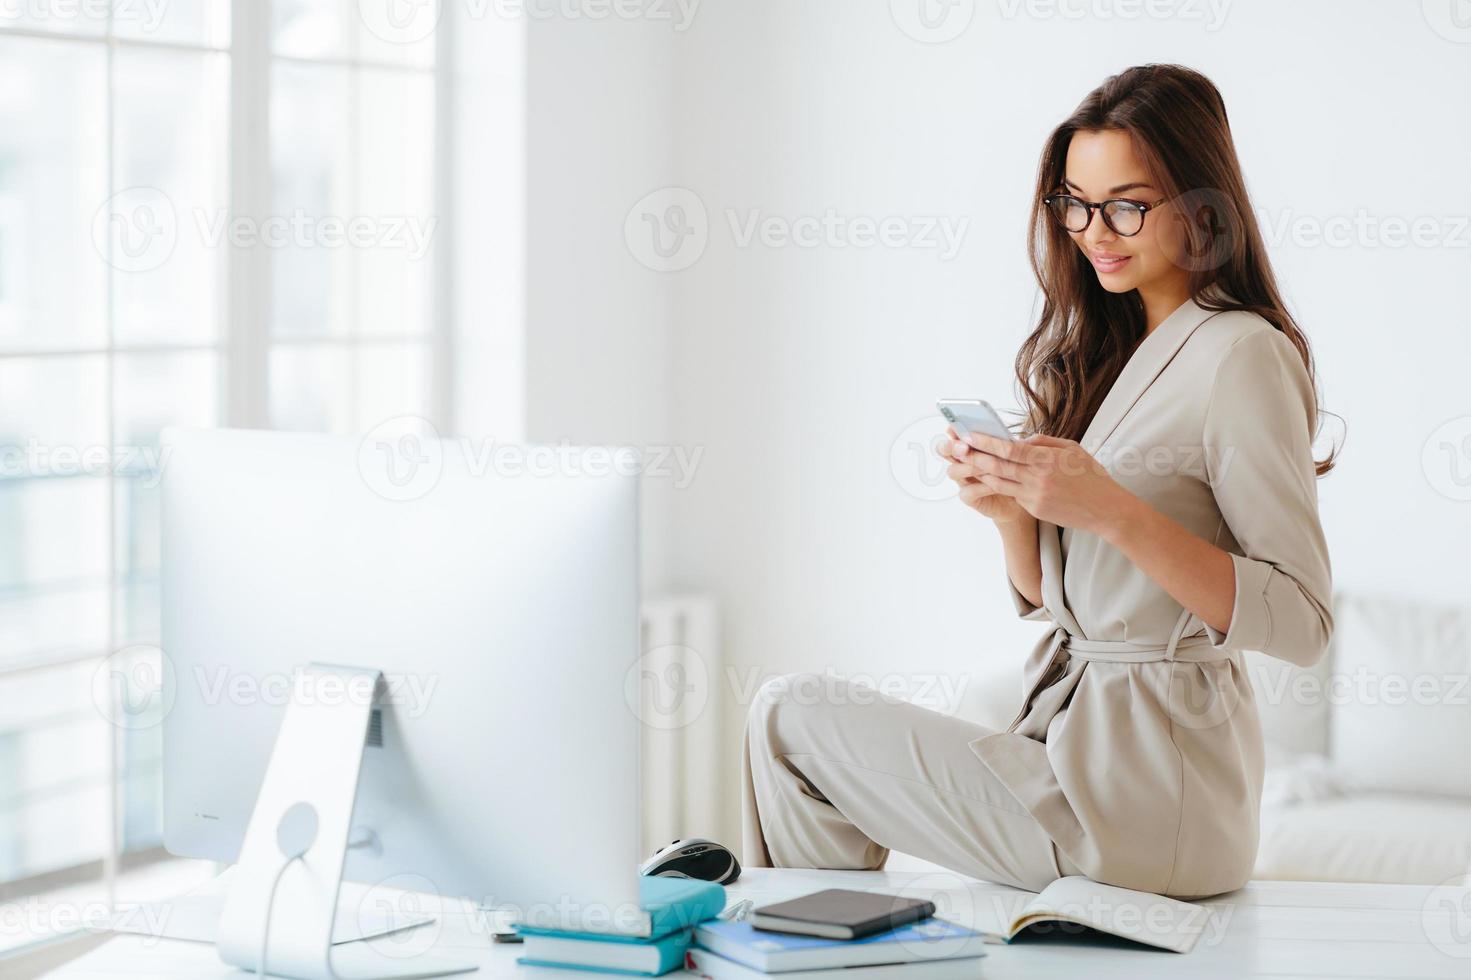 una mujer elegante con traje formal beige lee atentamente las noticias en el sitio web, se sienta sola en el escritorio en el gabinete, el monitor de la computadora y los blocs de notas alrededor. empleada usa un teléfono inteligente moderno en la oficina foto